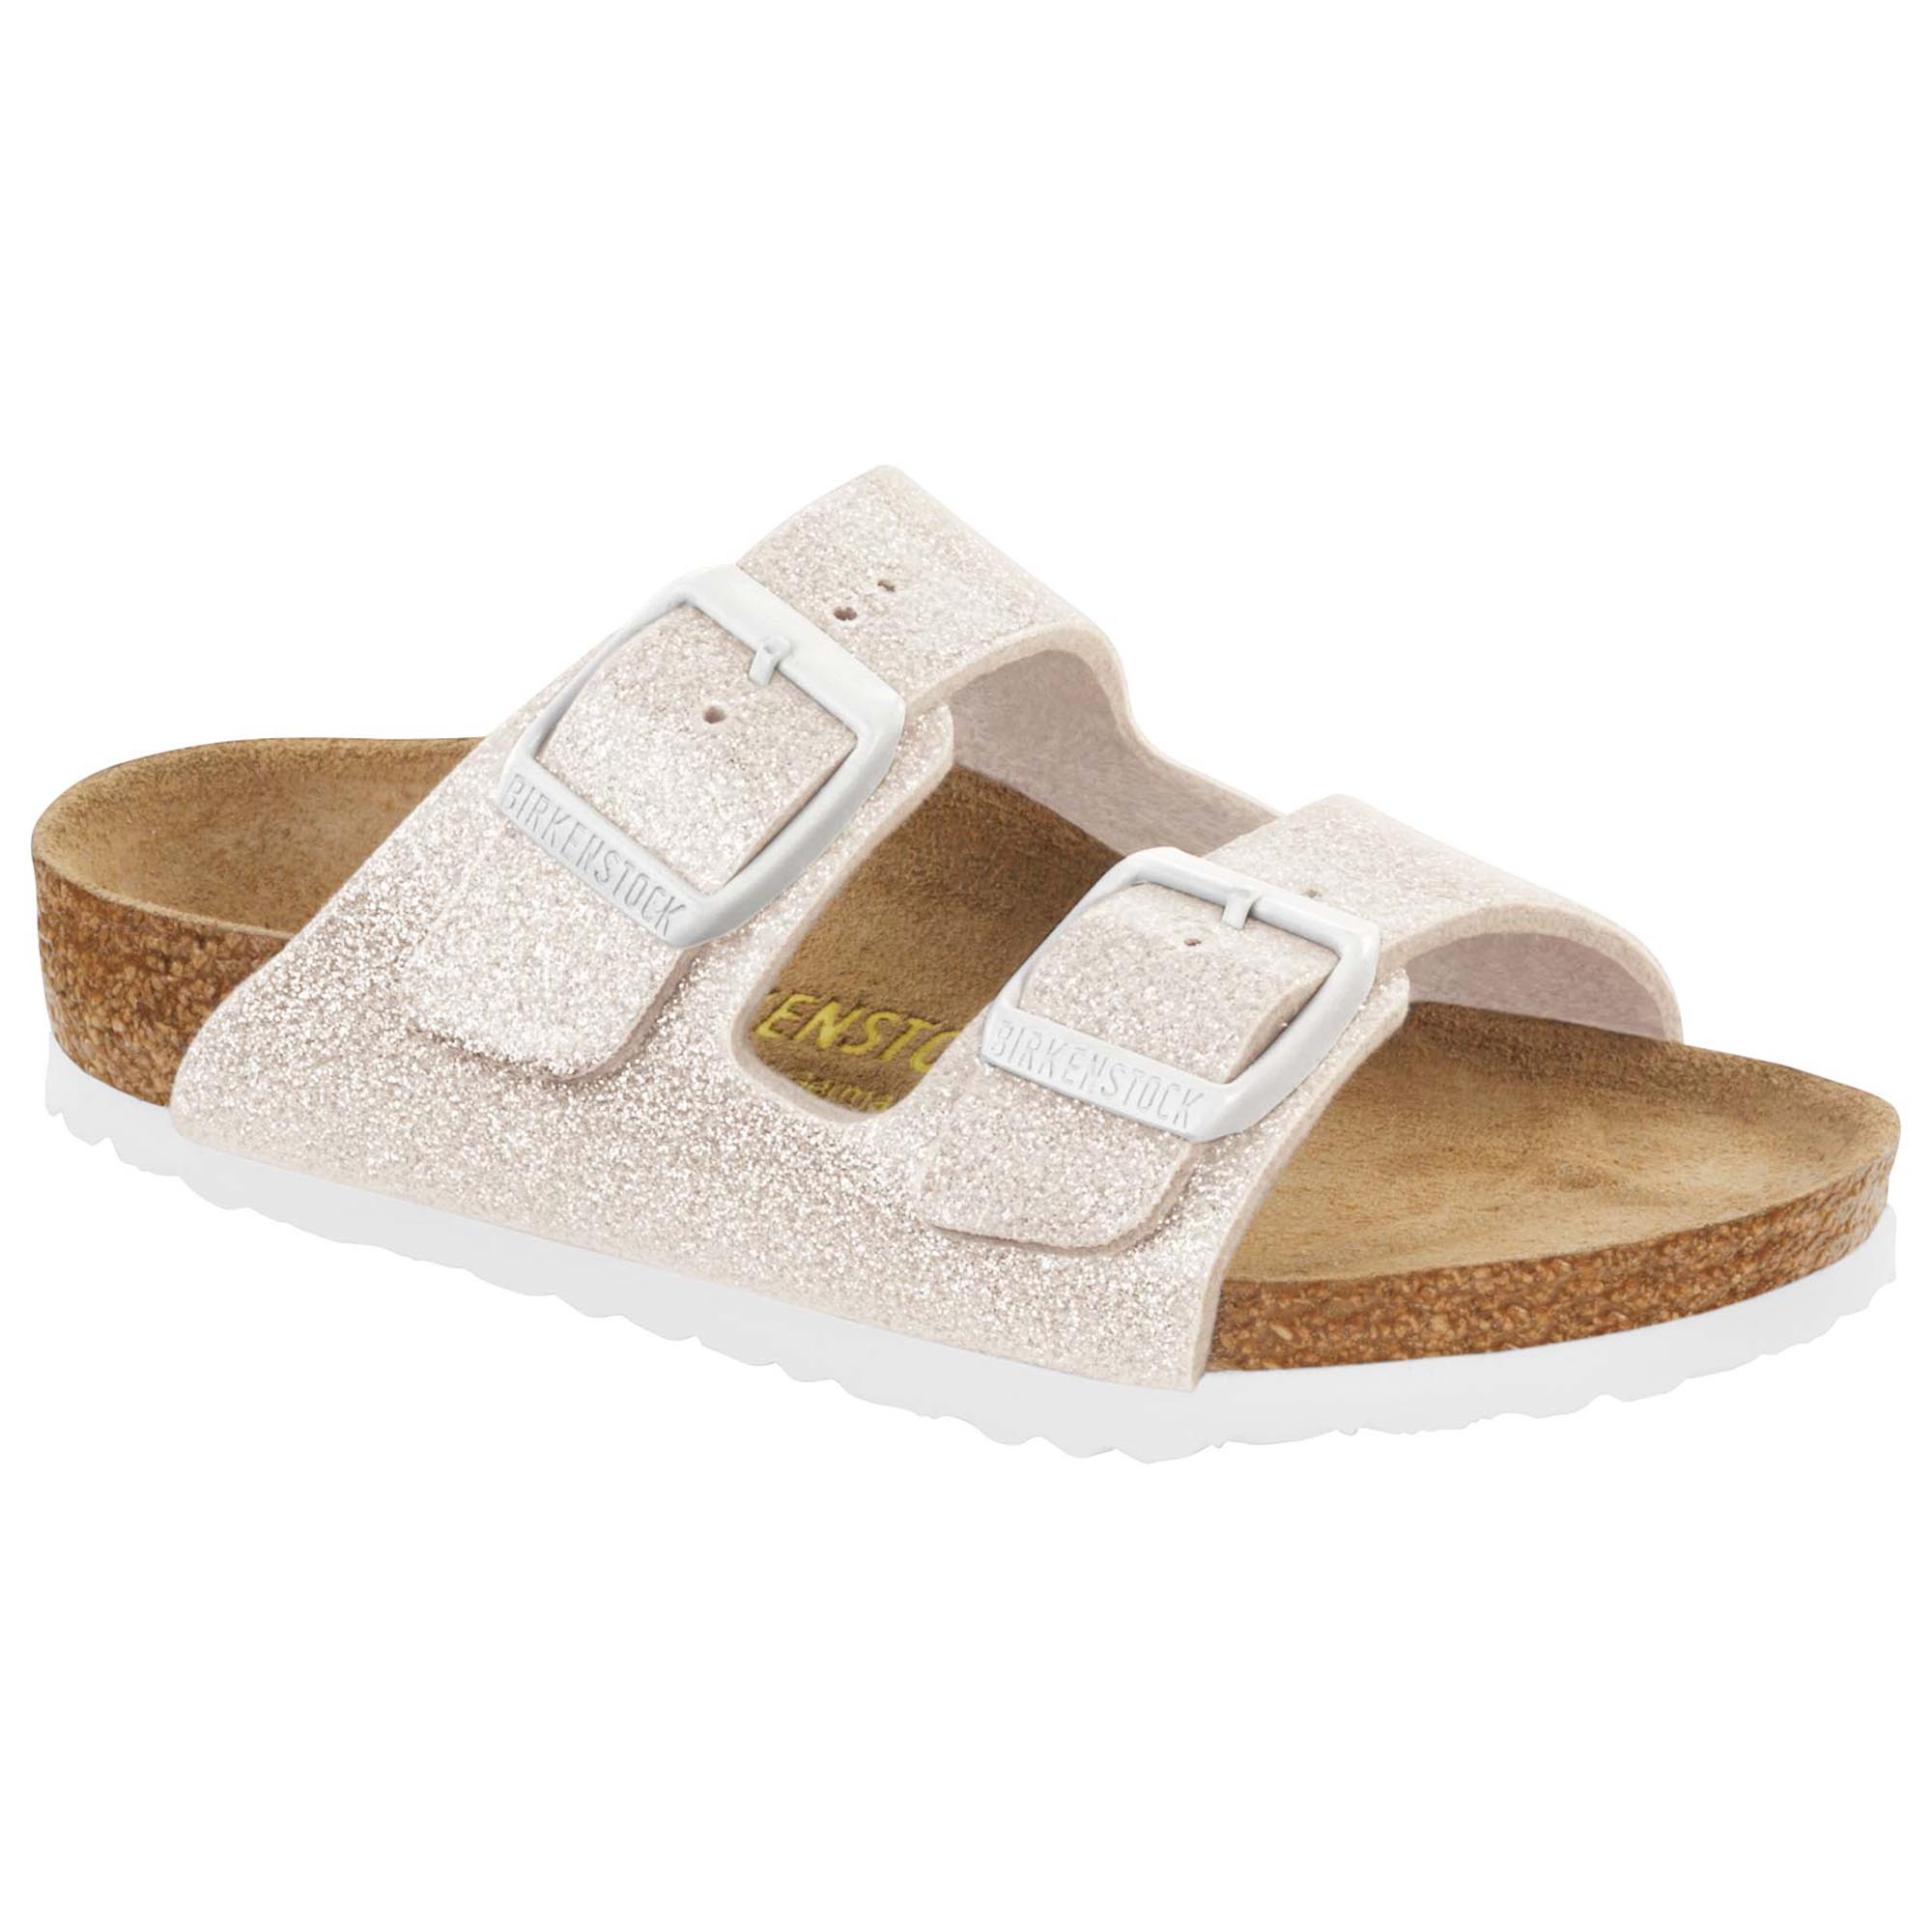 birkenstock slippers white